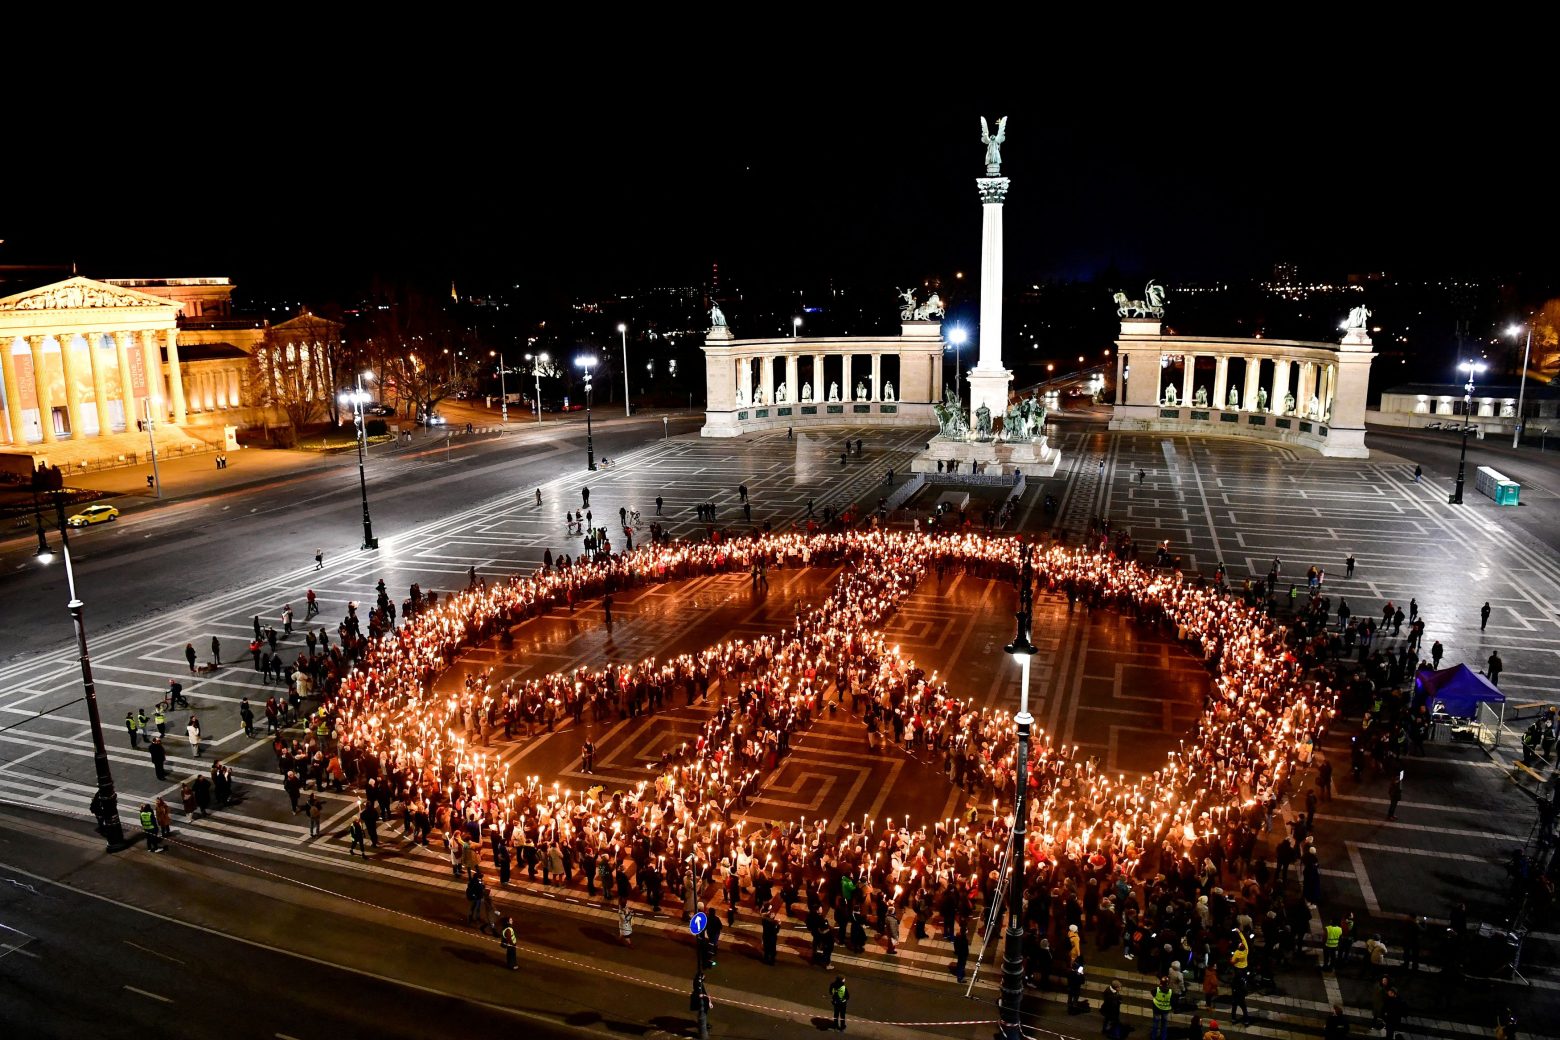 Ουκρανία: Αντιπολεμική διαδήλωση στη Βουδαπέστη - Σχημάτισαν το σήμα της ειρήνης